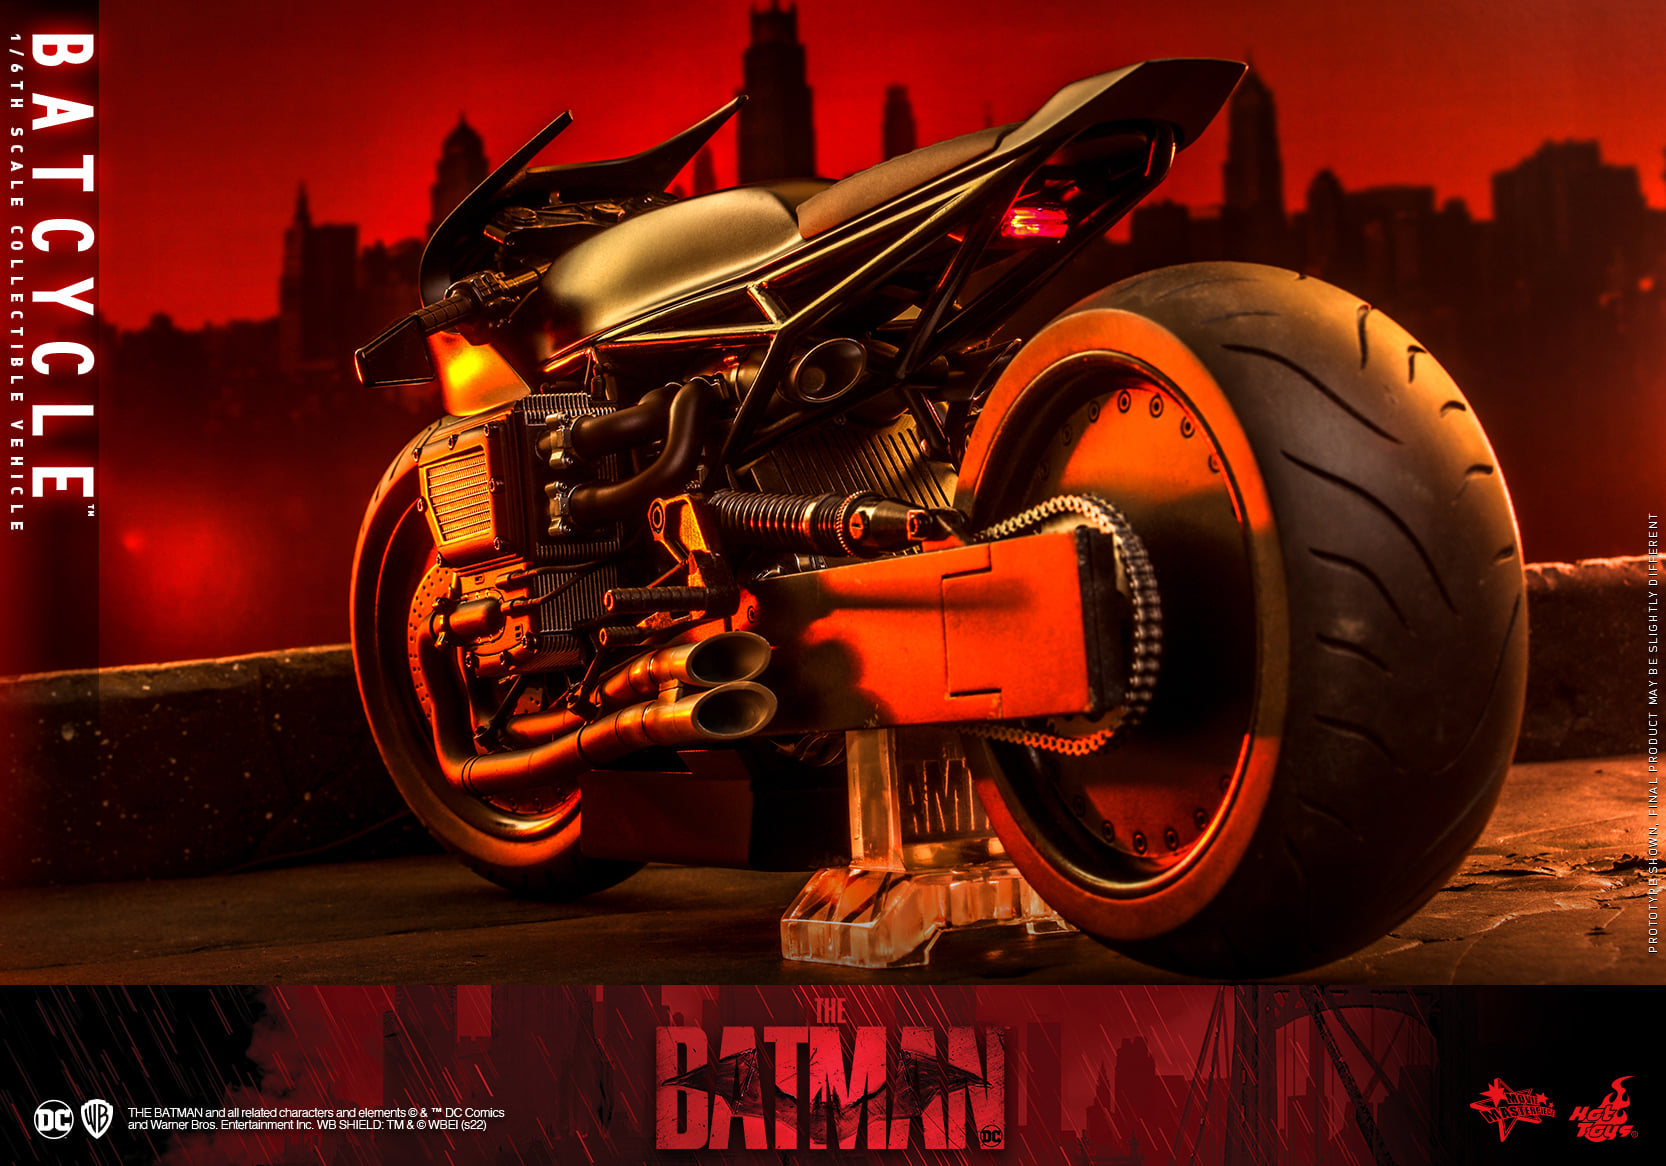 Nếu bạn là một người yêu thích đồ chơi sưu tầm, đặc biệt là những mẫu đồ chơi liên quan đến siêu anh hùng Batman, thì Hot Toys - MMS642 - The Batman - Batcycle (1/6 Scale) chắc chắn là sự lựa chọn không thể bỏ qua. Với chi tiết và chất lượng hoàn hảo, mô hình này sẽ làm bạn cảm thấy vô cùng hài lòng. Hãy nhanh chân tìm hiểu và sở hữu ngay nó!